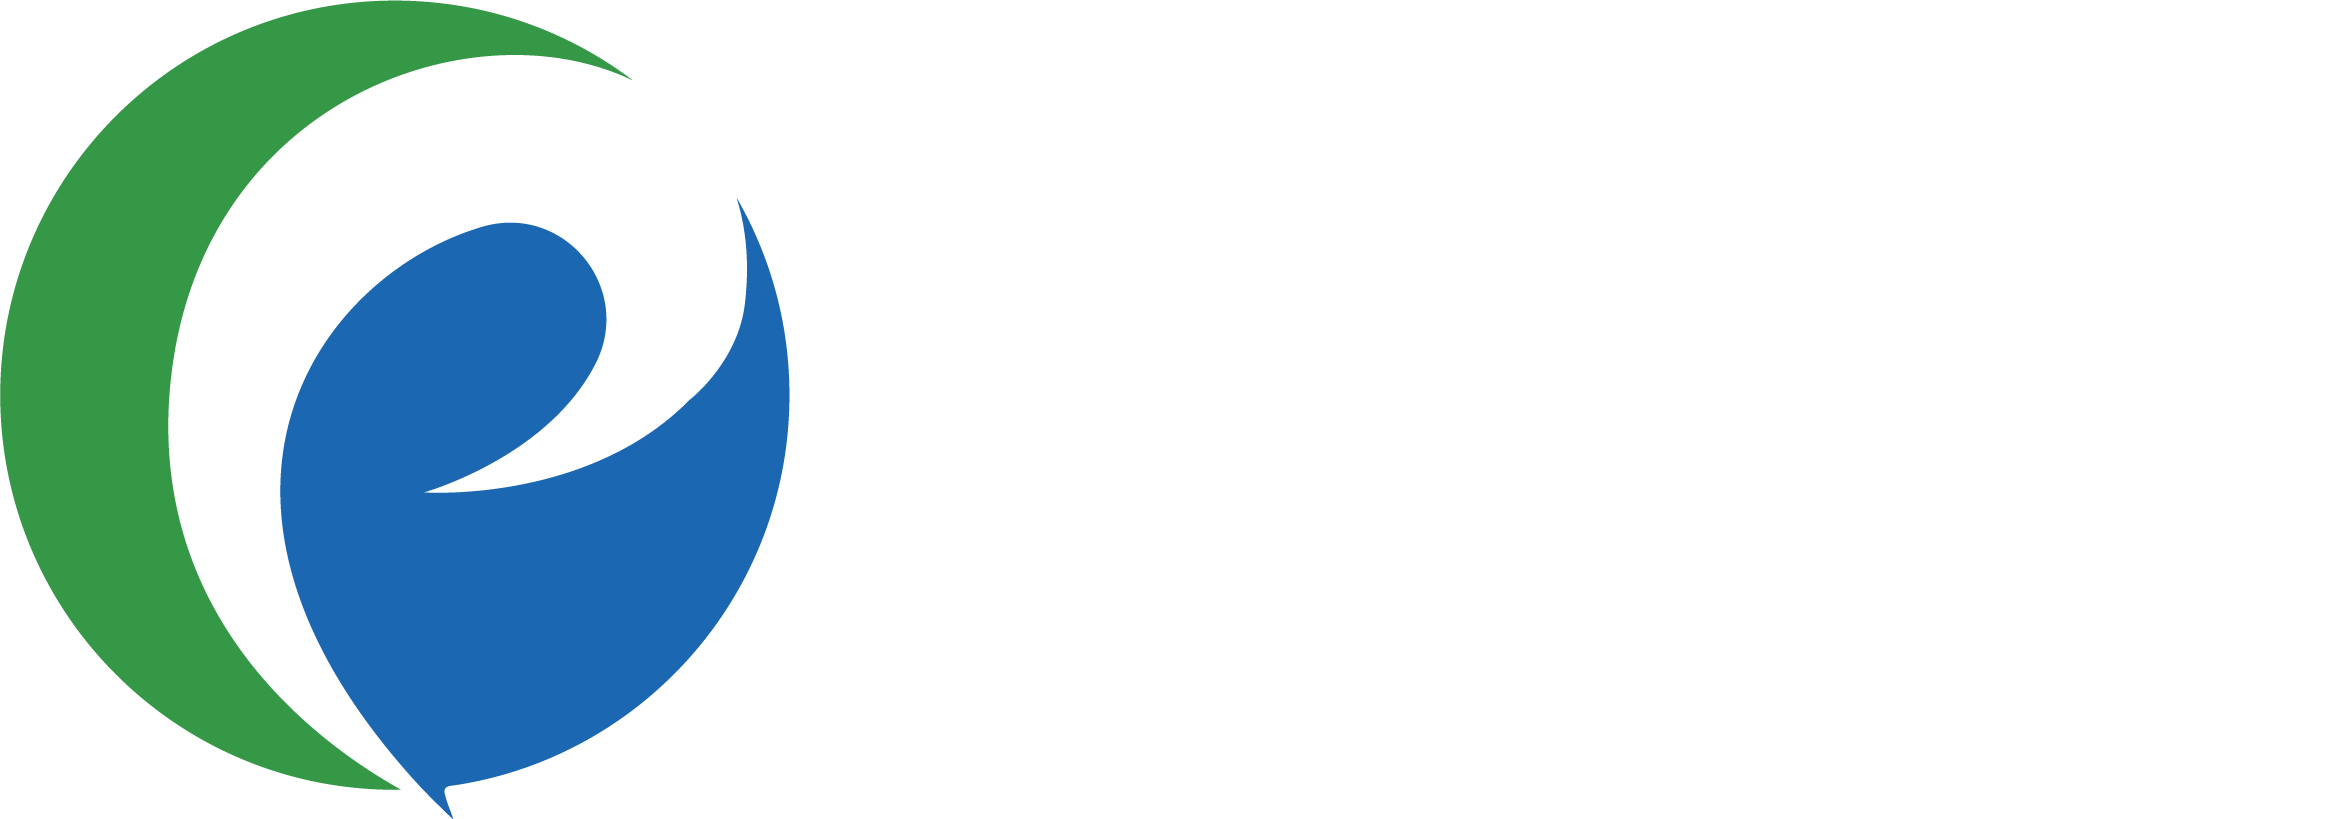 Primo Healthcare Services